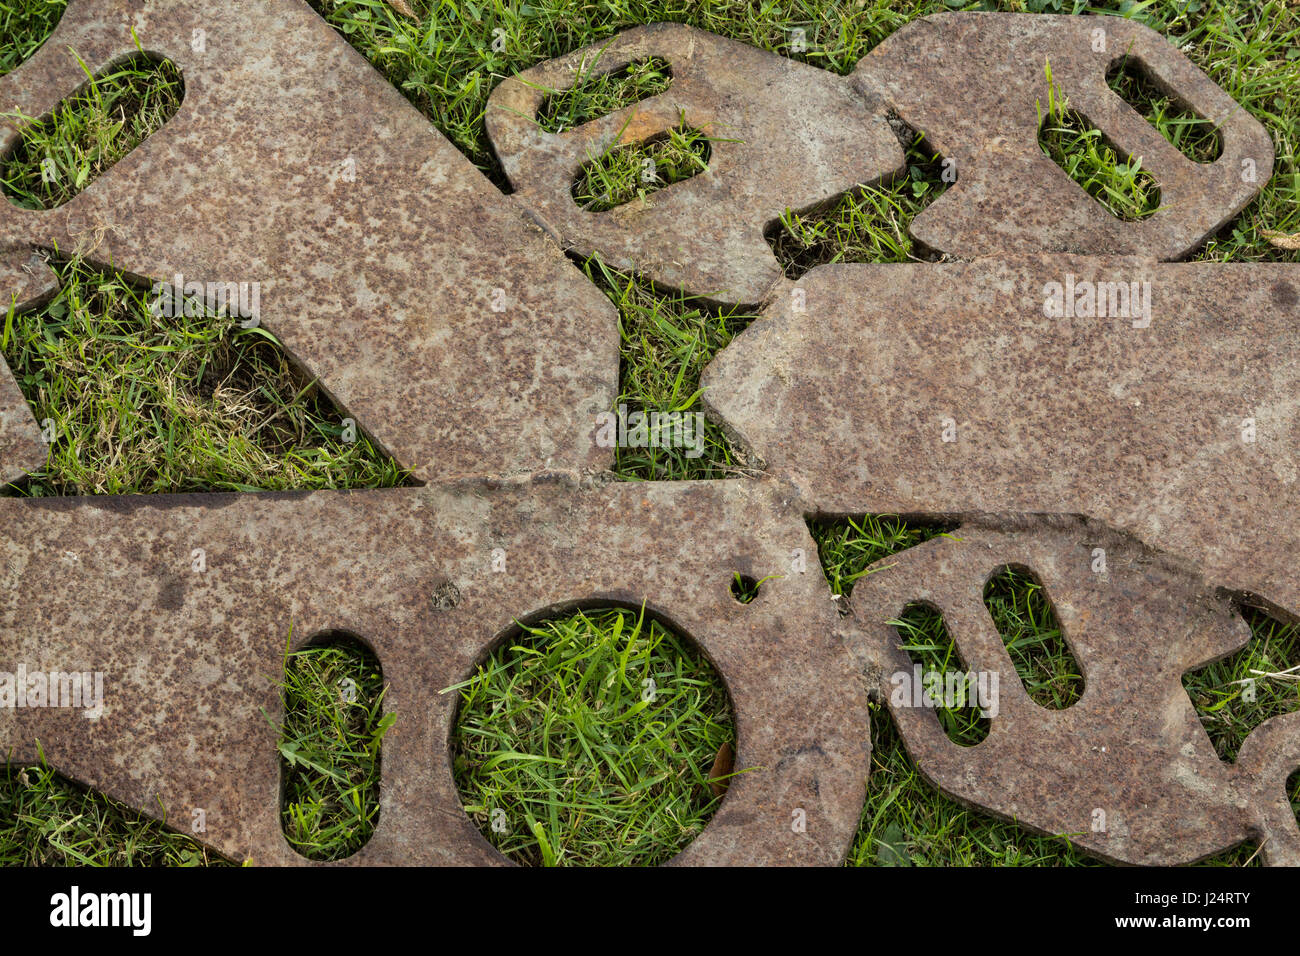 Einige Metall-Formen geschweißt zusammen zu legen, auf einigen grünen Rasen. Stockfoto